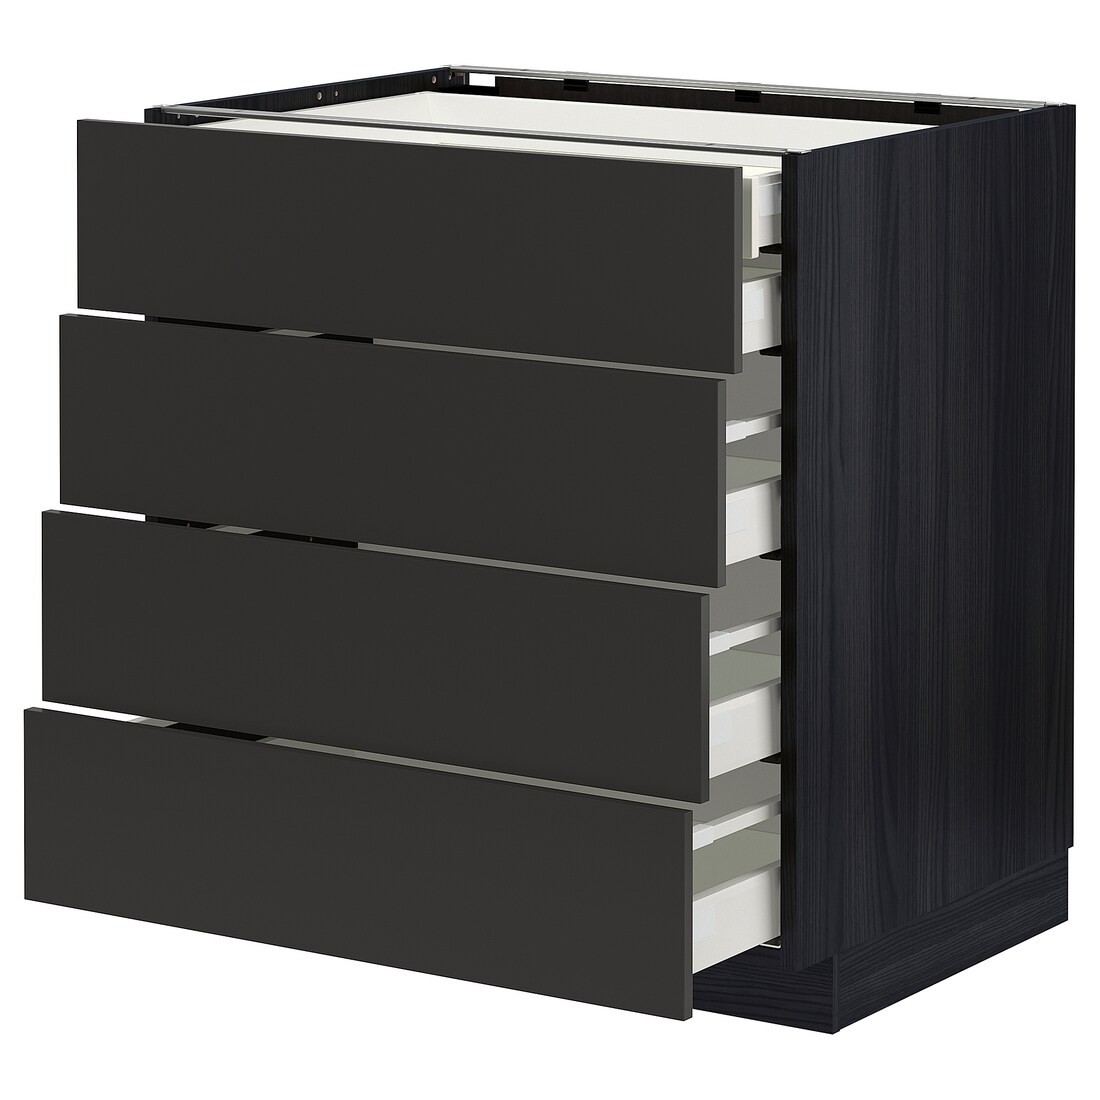 IKEA METOD МЕТОД / MAXIMERA МАКСИМЕРА Напольный шкаф с ящиками, черный / Nickebo матовый антрацит, 80x60 см 39499079 394.990.79